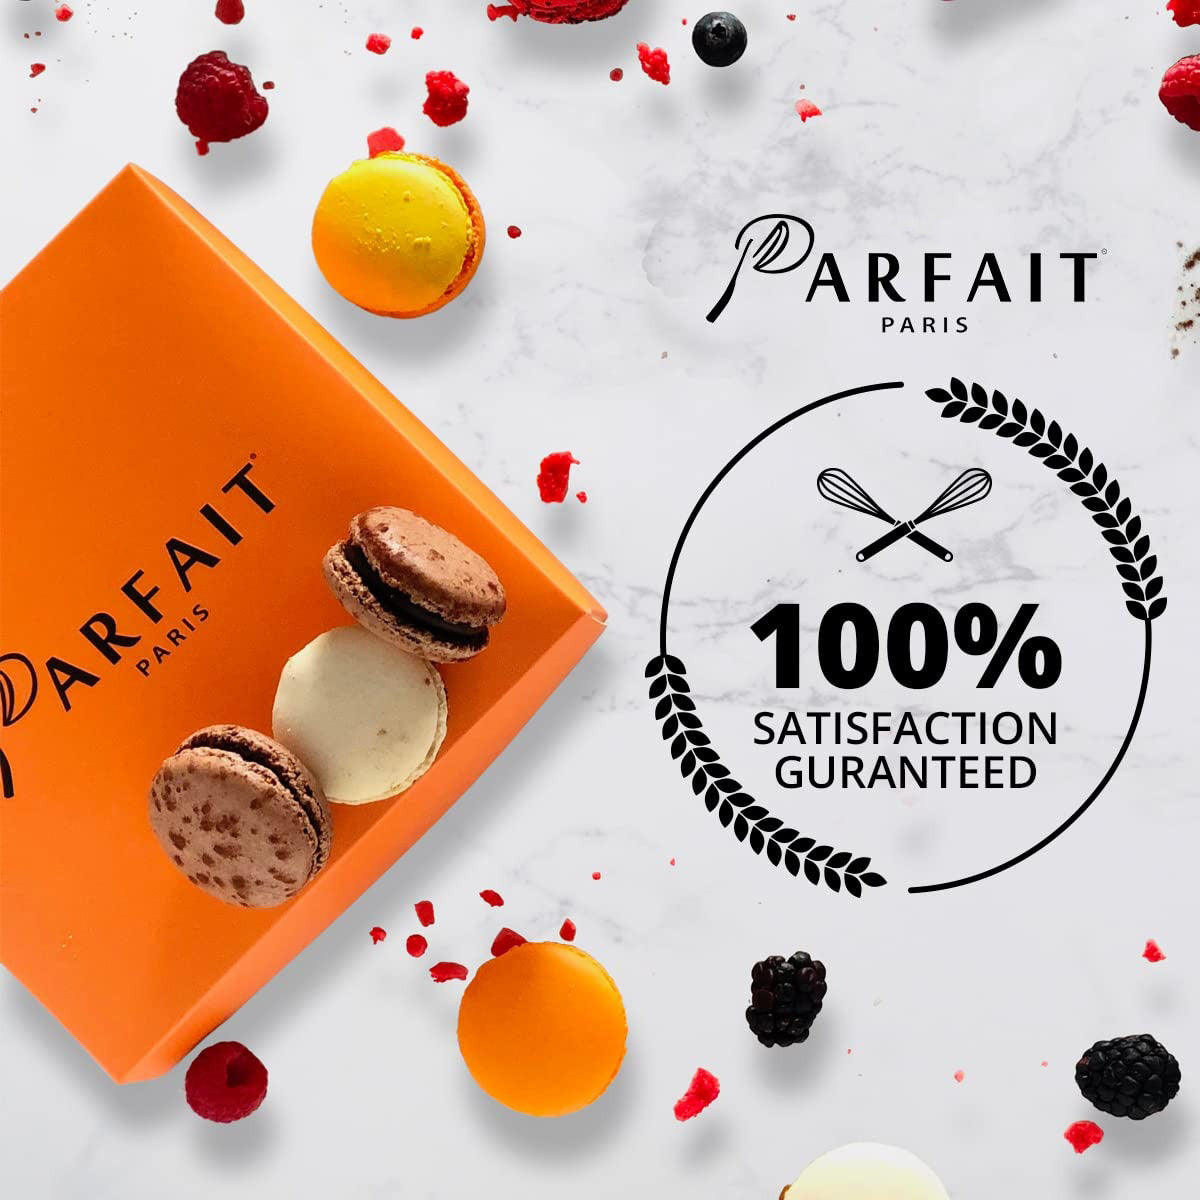 Parfait Paris 100% Satisfaction Guaranteed